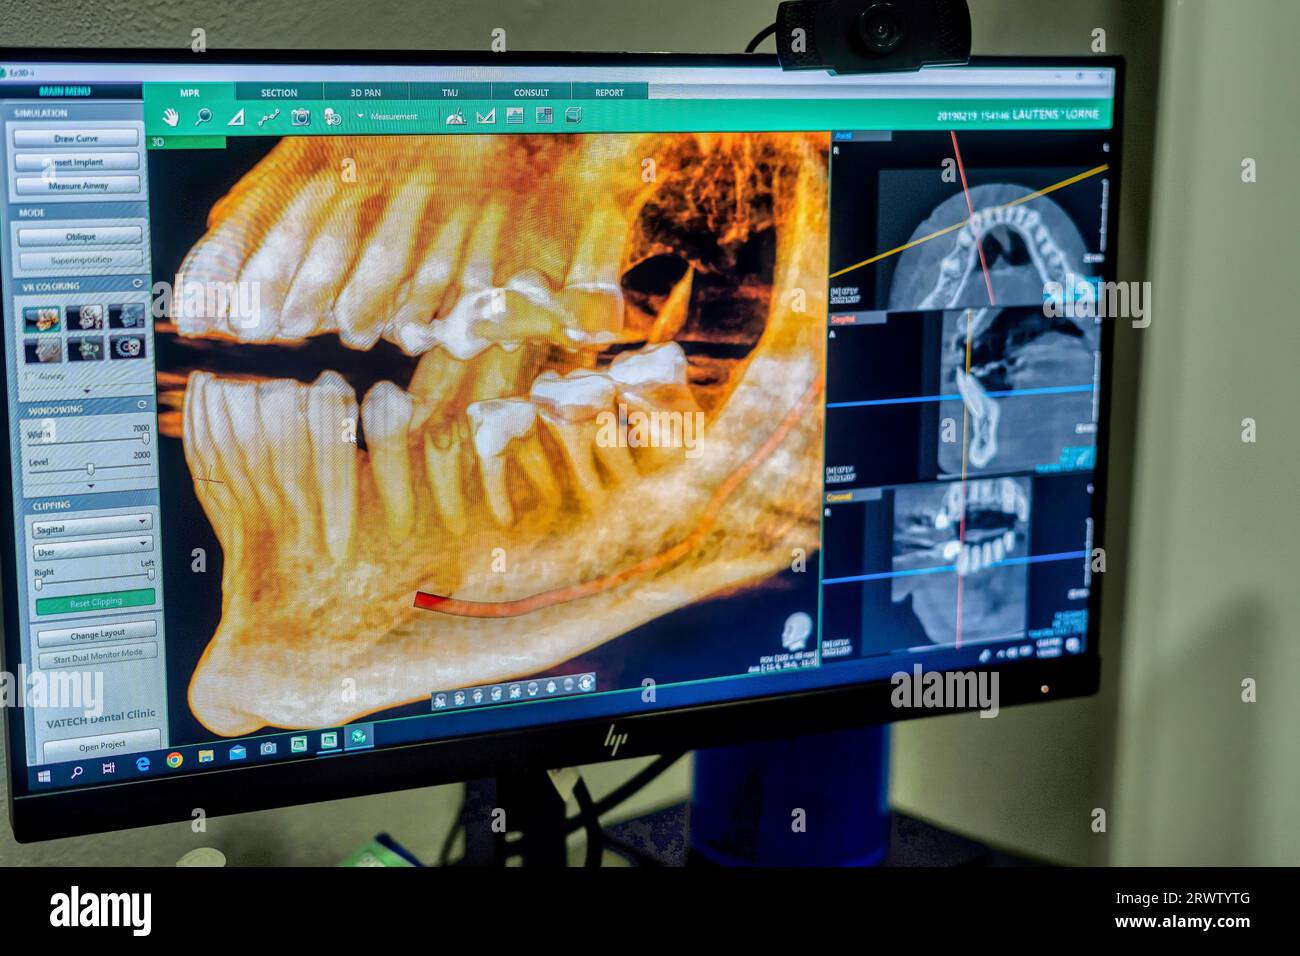 L'invention concerne un écran d'ordinateur affichant une image rendue en 3D d'une bouche humaine avec un modèle de dent placé devant celle-ci Banque D'Images